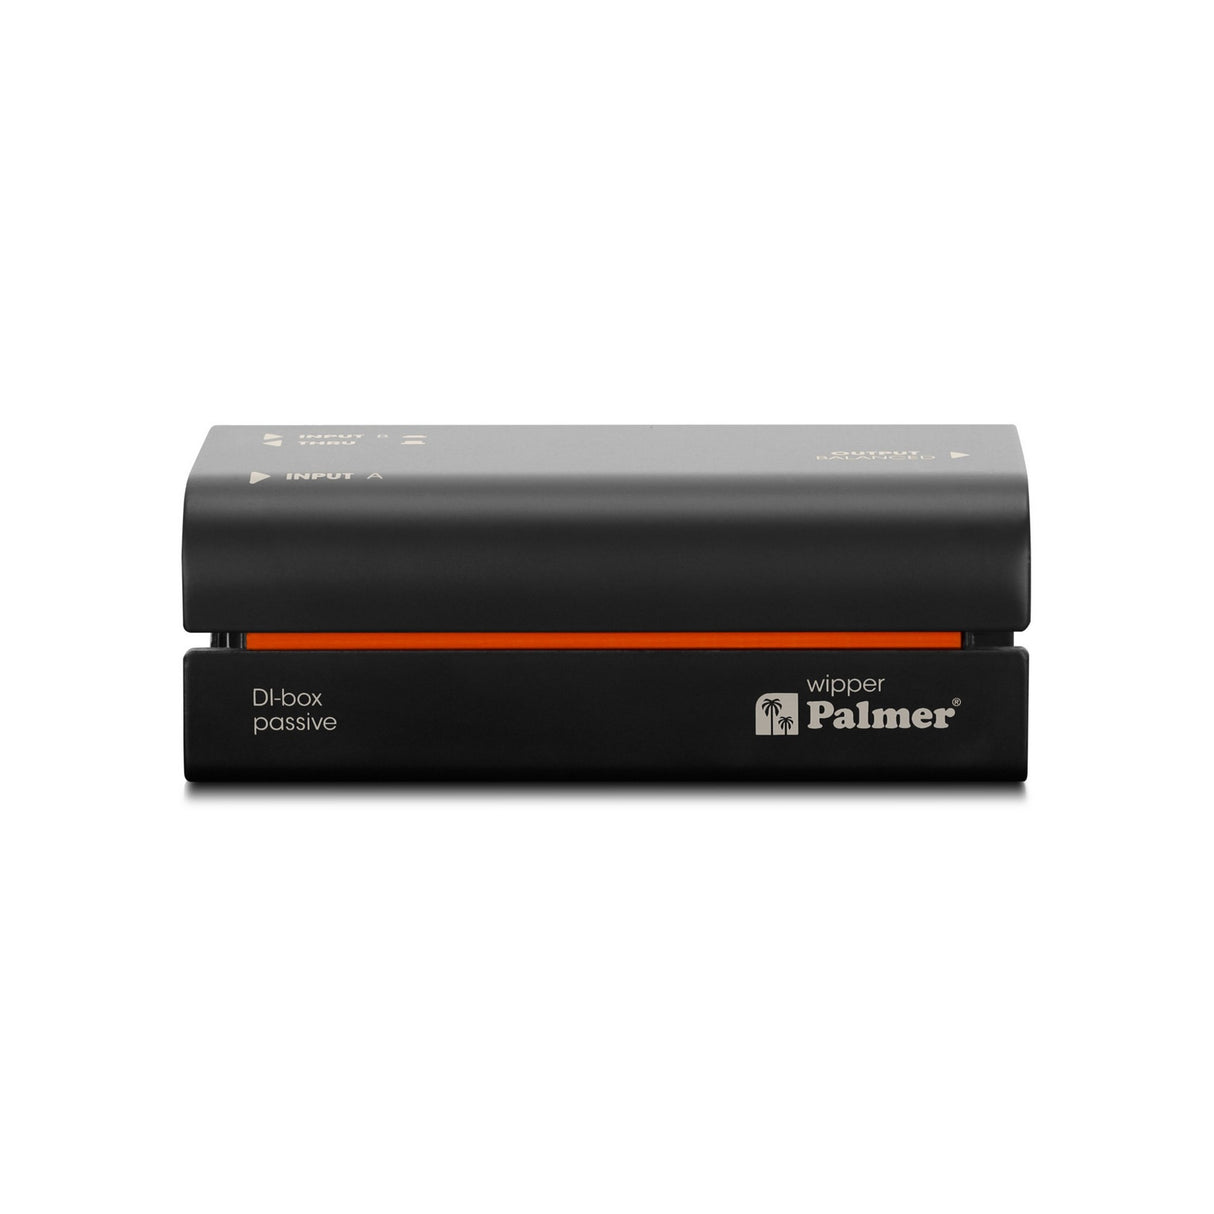 Palmer wipper Passive DI Box